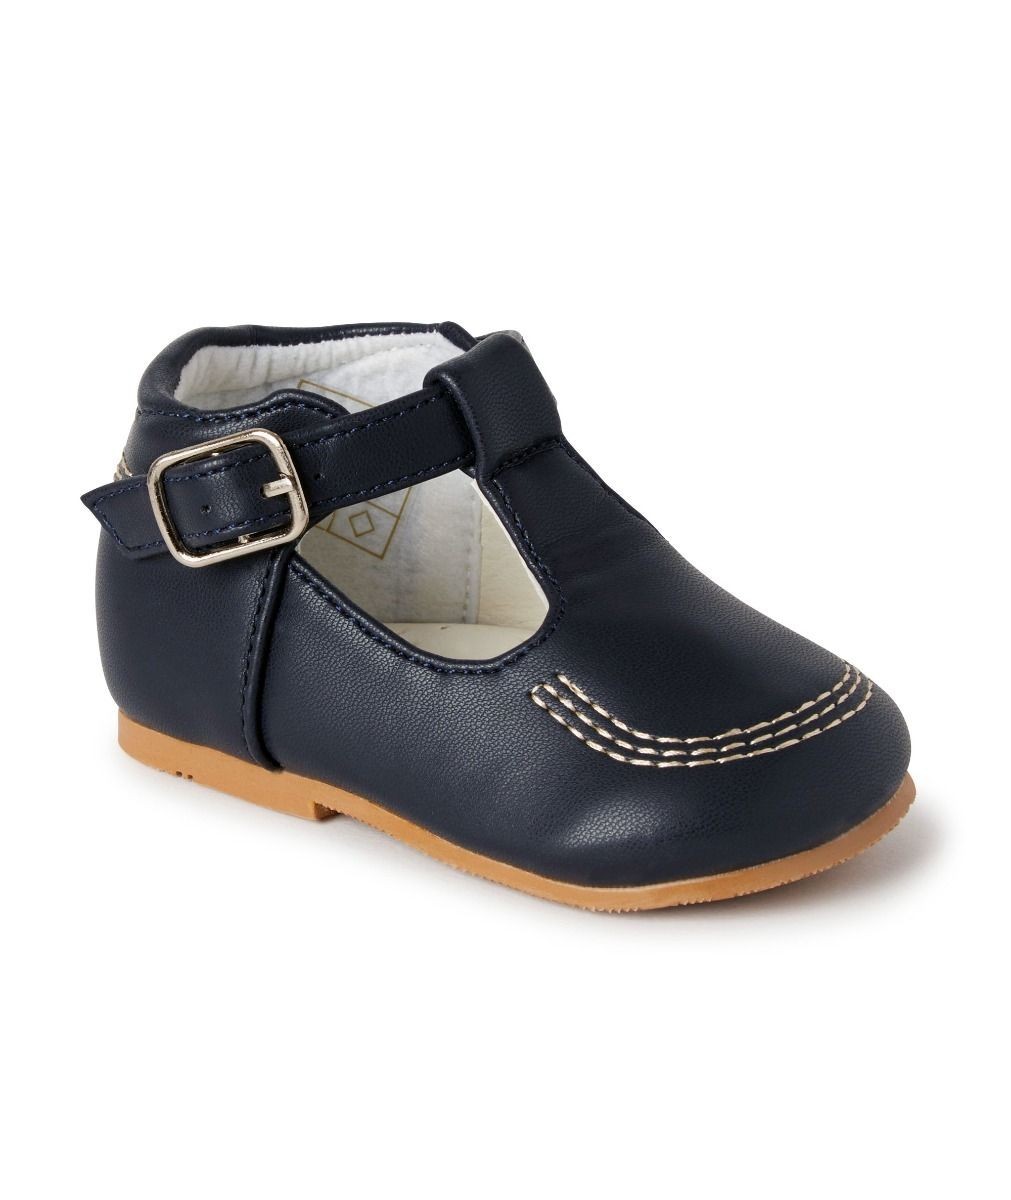 Chaussures à Boucle en Cuir pour Bébés & Garçons – TEDDY - Bleu marine